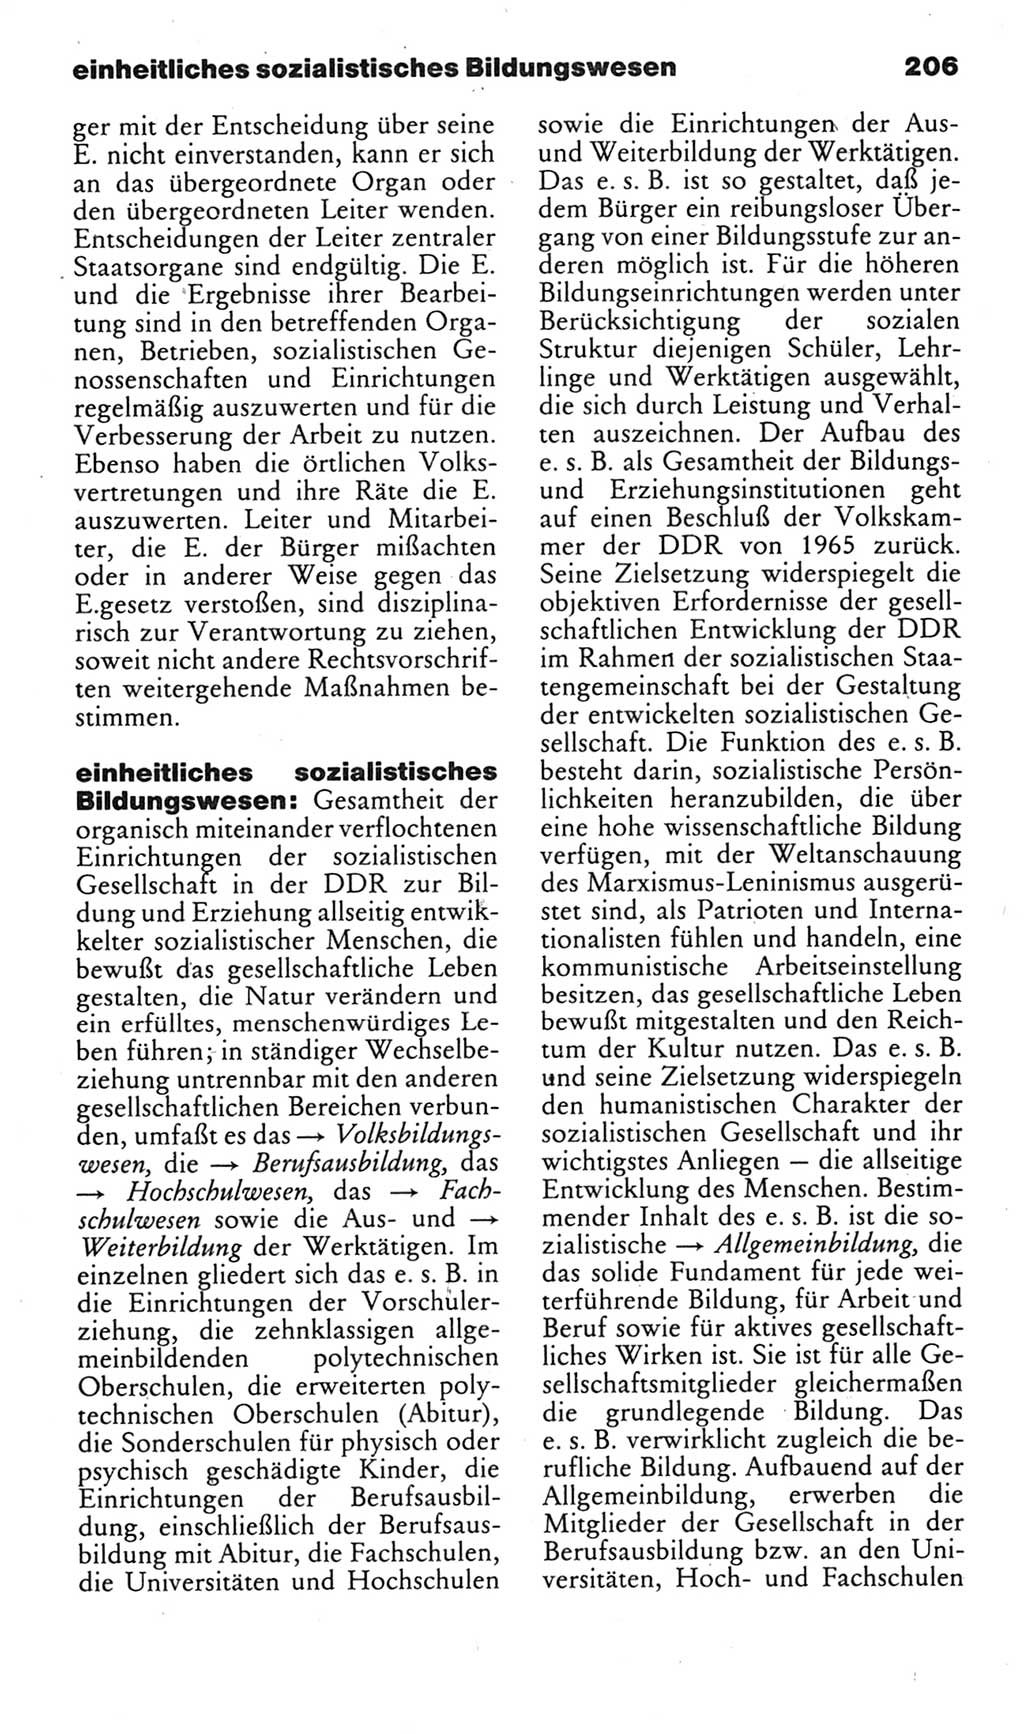 Kleines politisches Wörterbuch [Deutsche Demokratische Republik (DDR)] 1985, Seite 206 (Kl. pol. Wb. DDR 1985, S. 206)